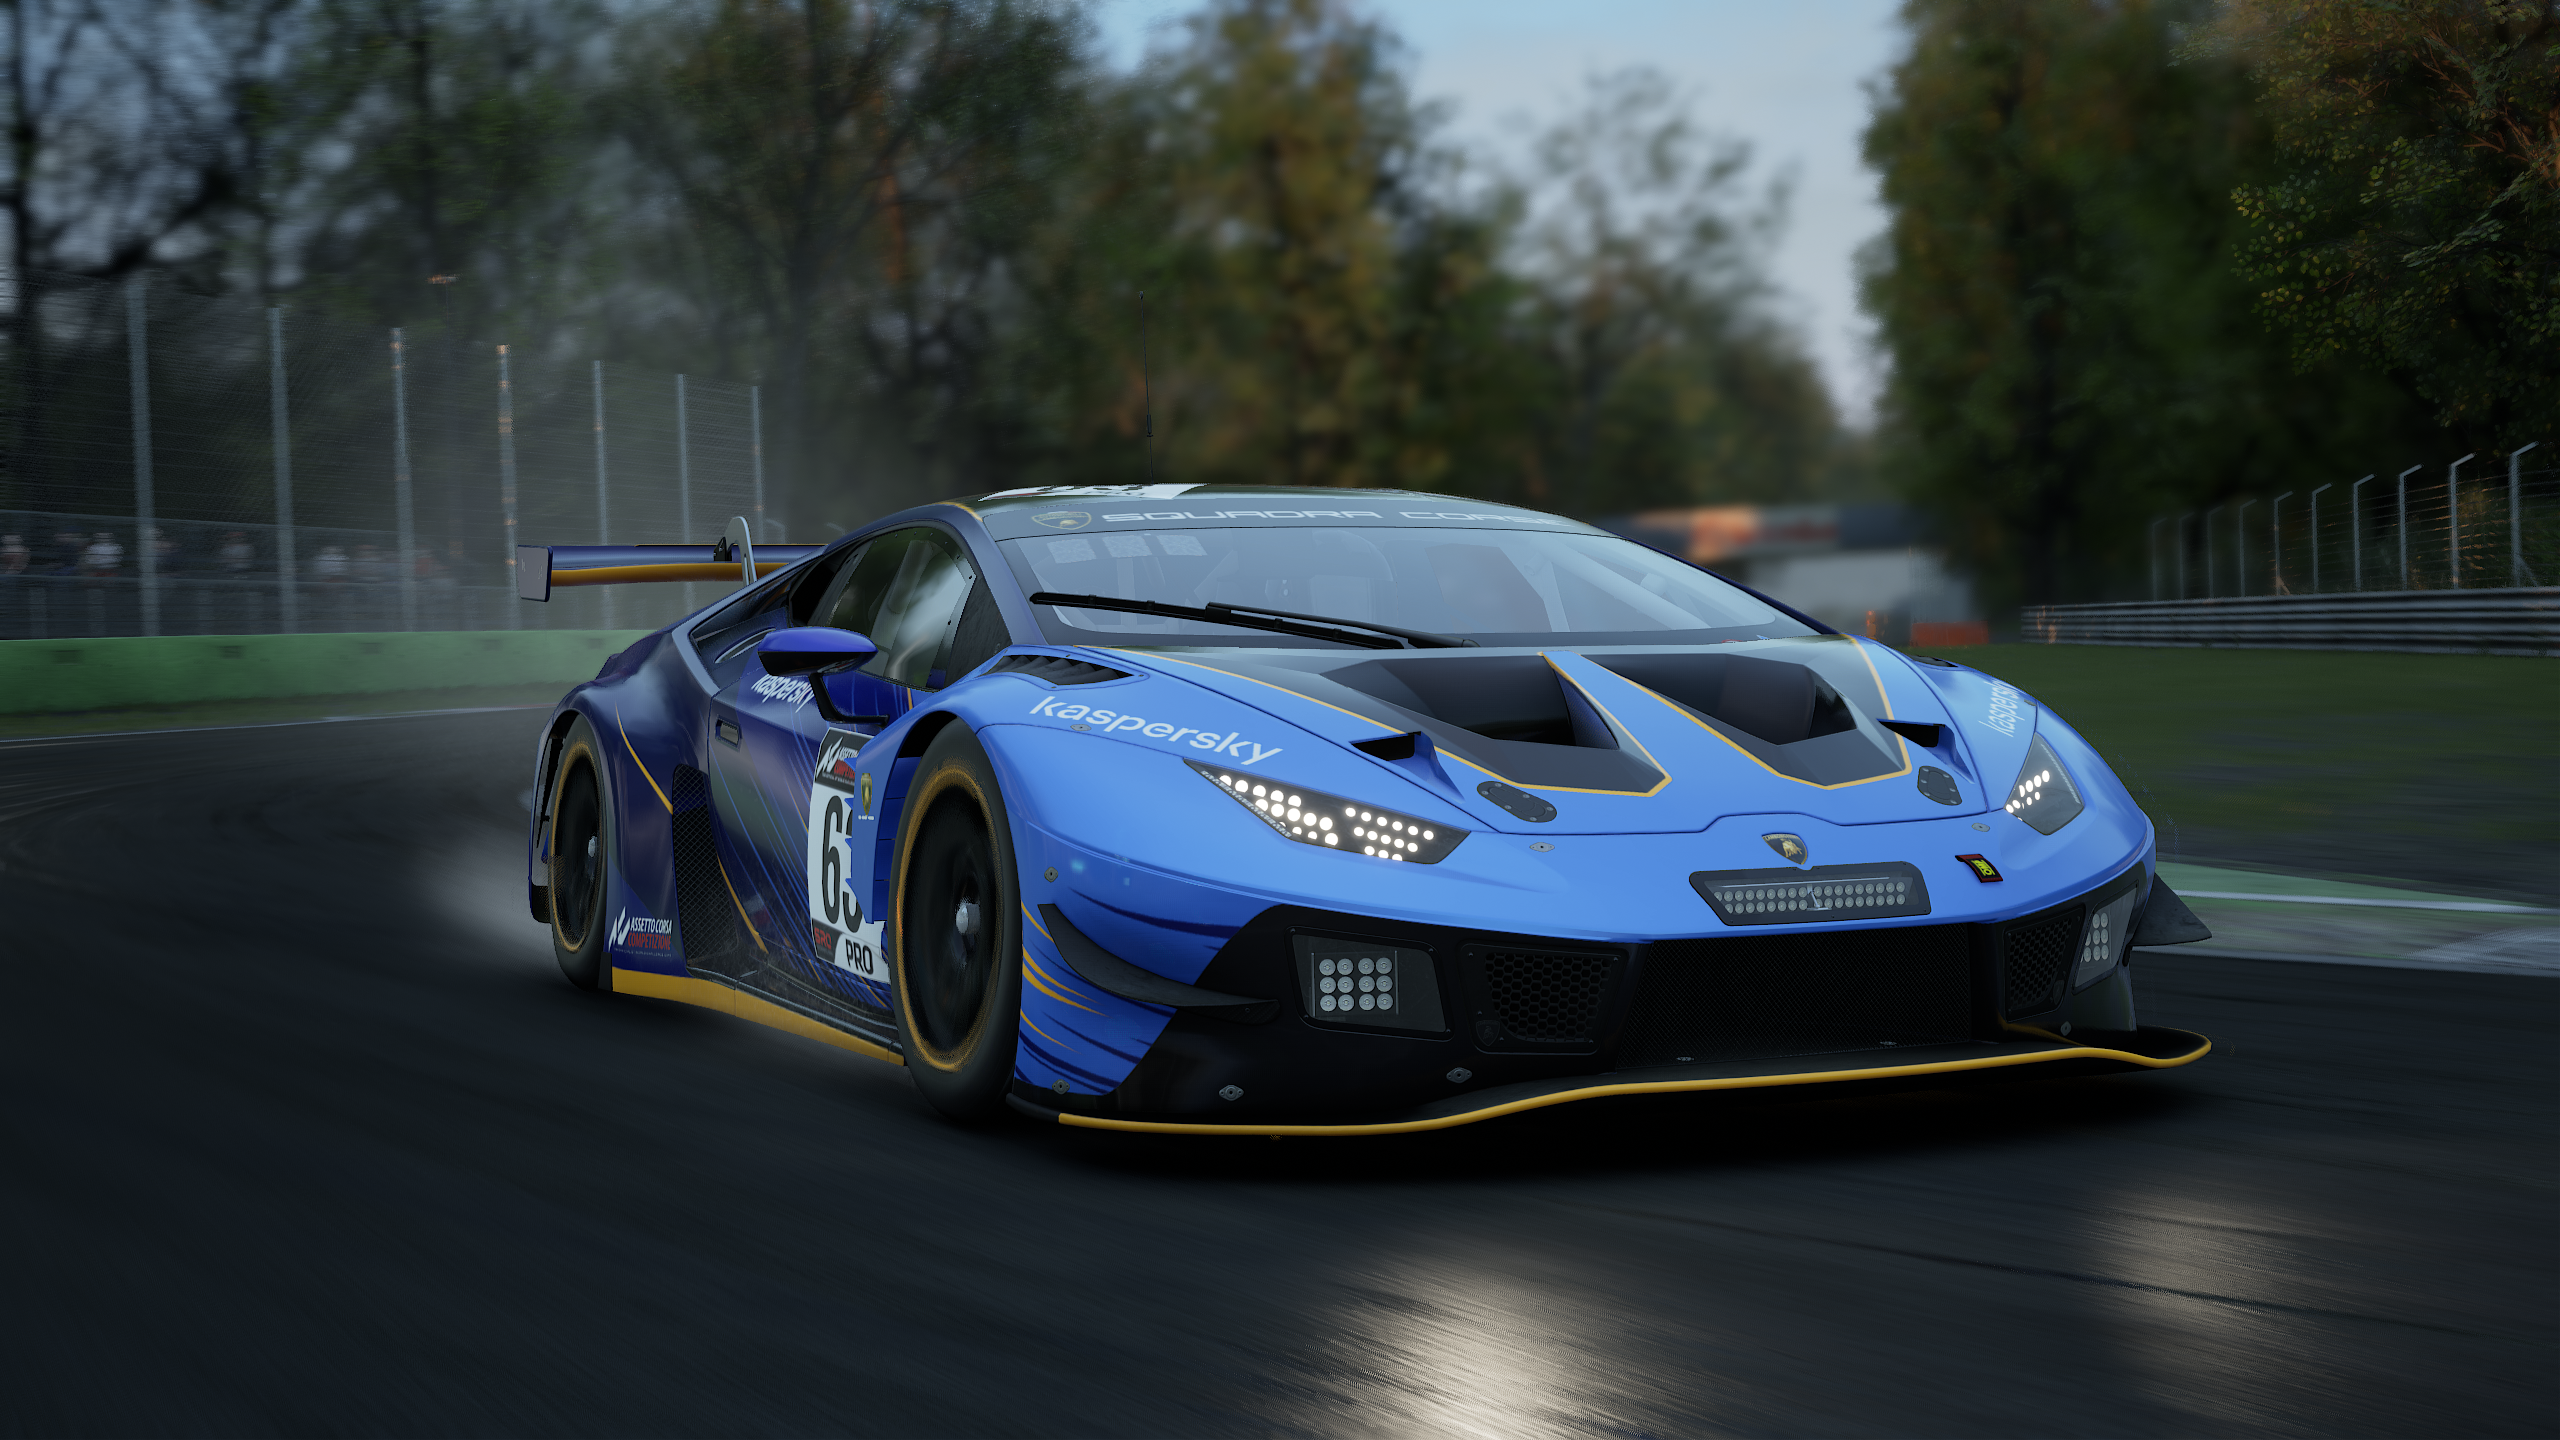 More information about "Assetto Corsa Competizione e Lamborghini di nuovo insieme per l'edizione 2021 di "The Real Race""